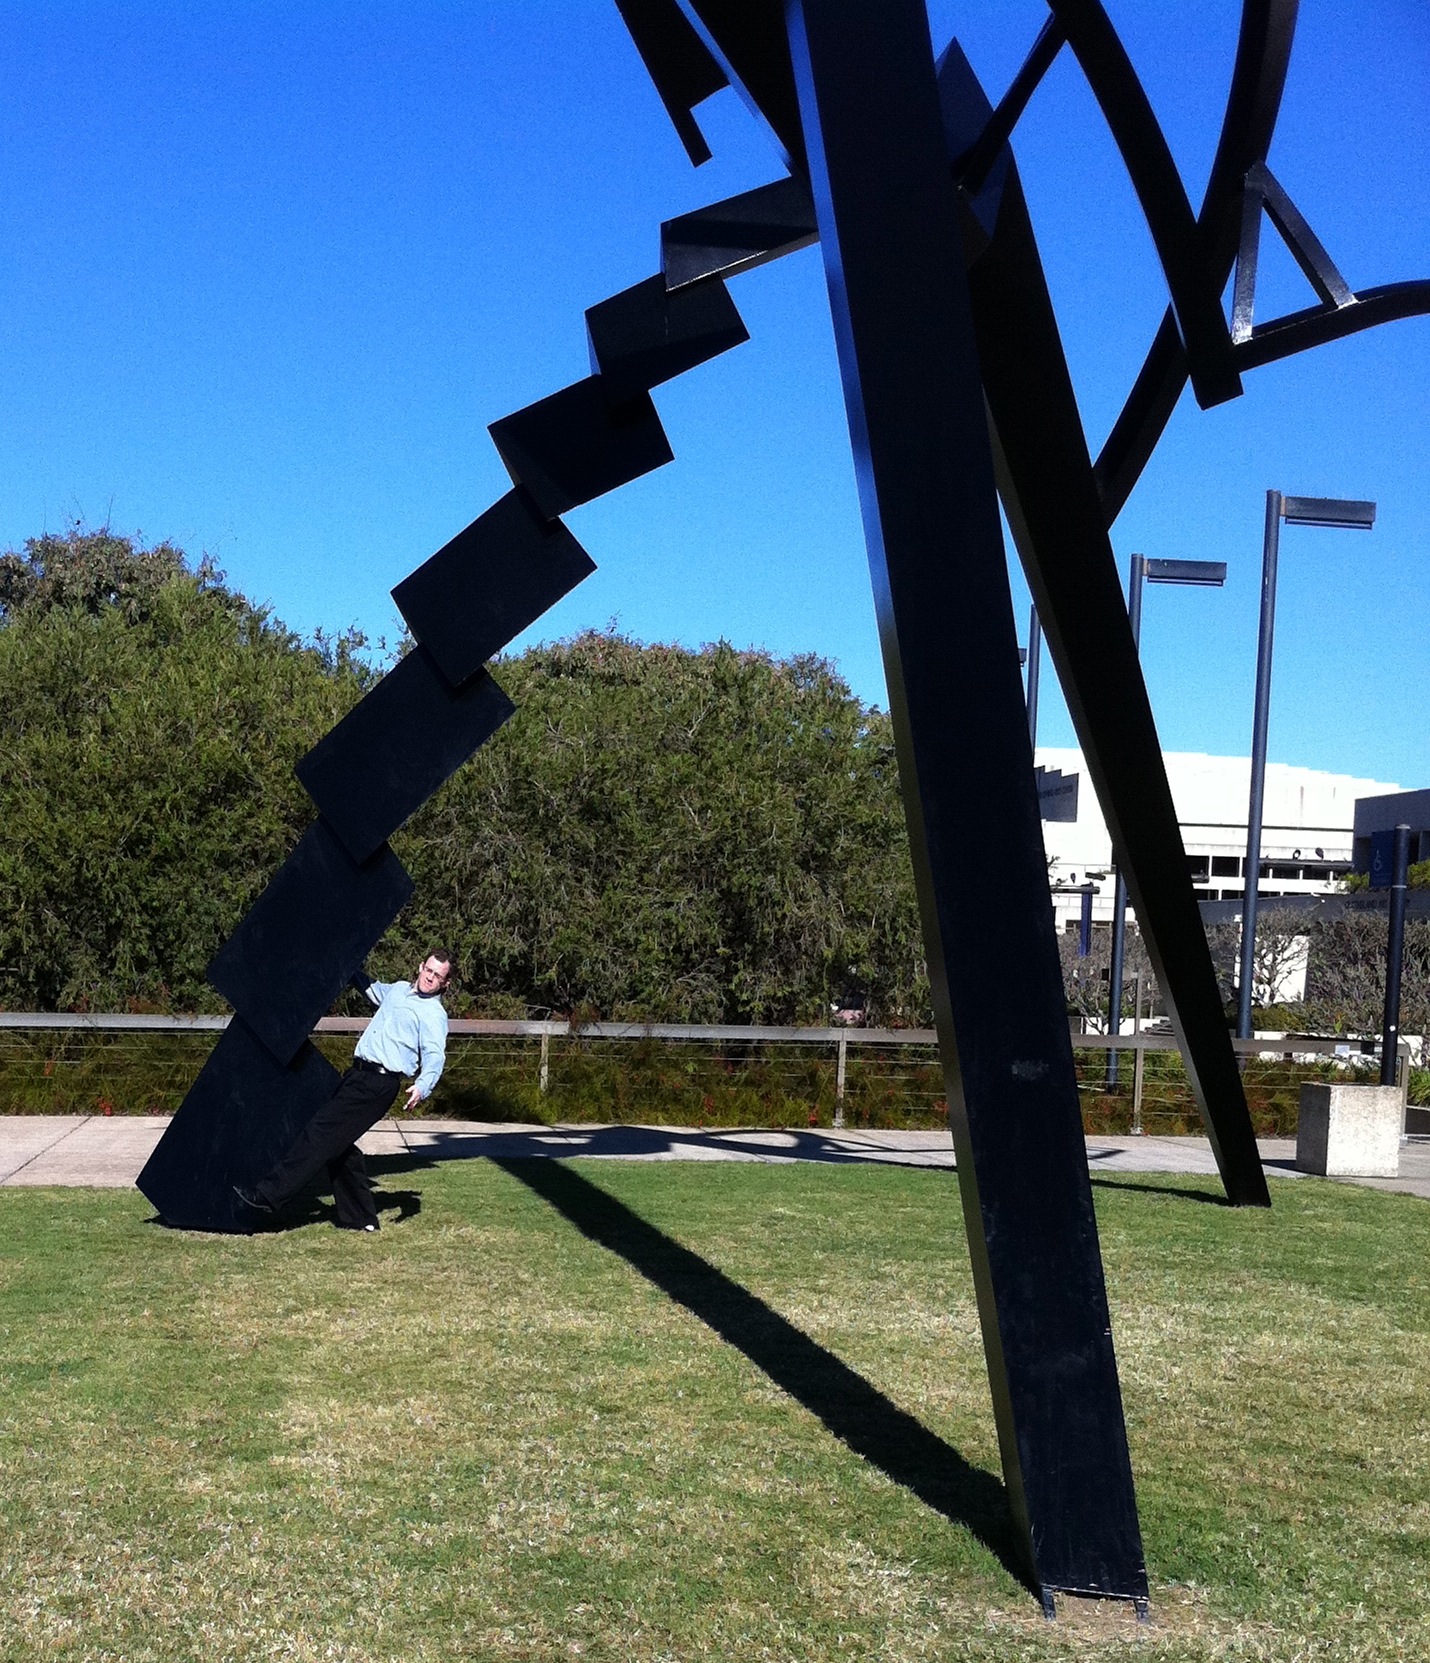 Brisbane sculpture: giant angular alien, from near art museum